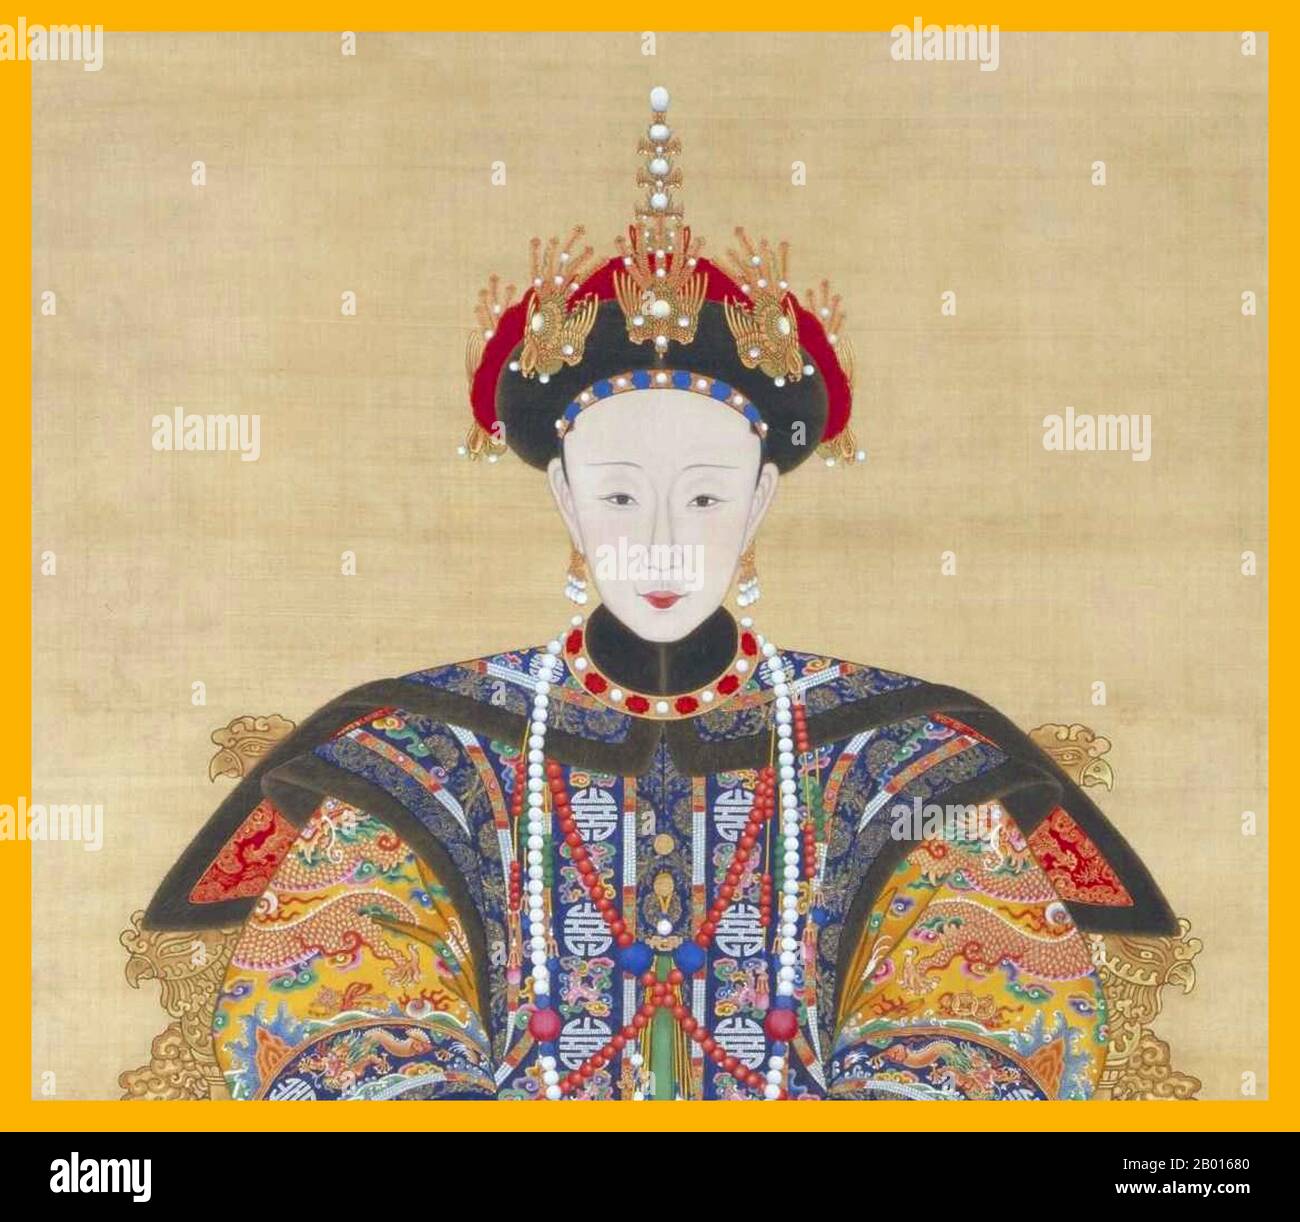 Chine : impératrice Xiao Shu Rui (2 octobre 1760 - 5 mars 1797), première impératrice Consort de l'empereur Jiaqing. Peinture de défilement manuel, c. 1796-1797. L'impératrice Xiaoshurui a été la première impératrice Consort de l'empereur Jiaqing de la dynastie Qing. Originaire de la plaine de Manchu Banner blanc Hitara Clan, Lady Hitara épousa Yongyan (le futur empereur Jiaqing) en 1774, pendant le règne de l'empereur Qianlong. Elle est devenue impératrice consort en 1796, quand l'empereur Qianlong abdiqua en faveur de Yongyan, mais elle mourut un an plus tard. Son fils Minning deviendrait l'empereur Daoguang en 1820. Banque D'Images